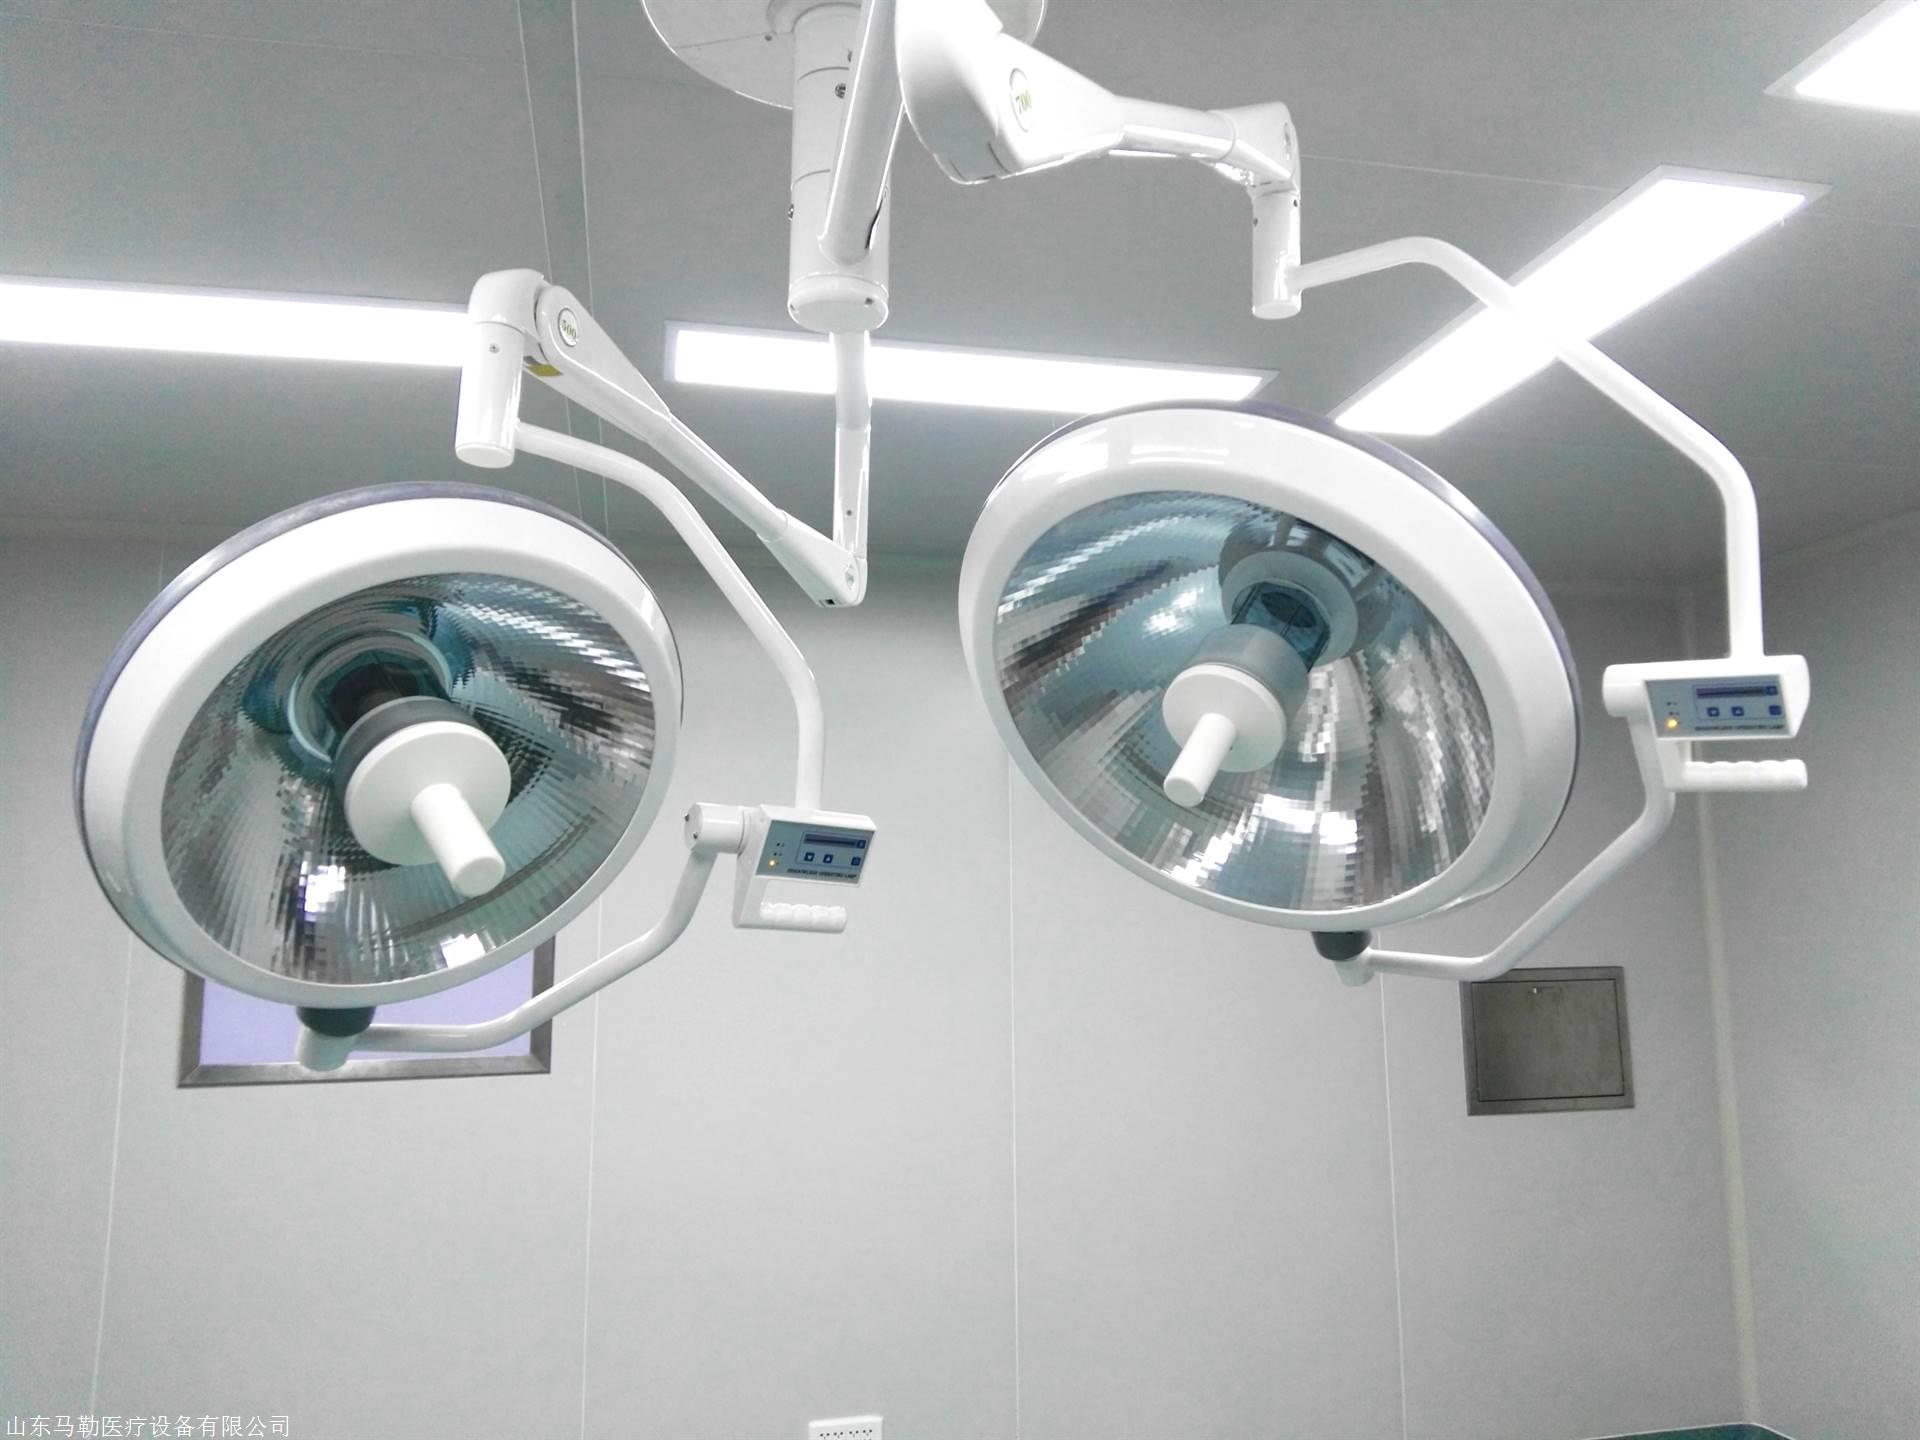 马勒手术无影灯整体反射手术灯生产厂家图片_高清图-山东马勒医疗设备